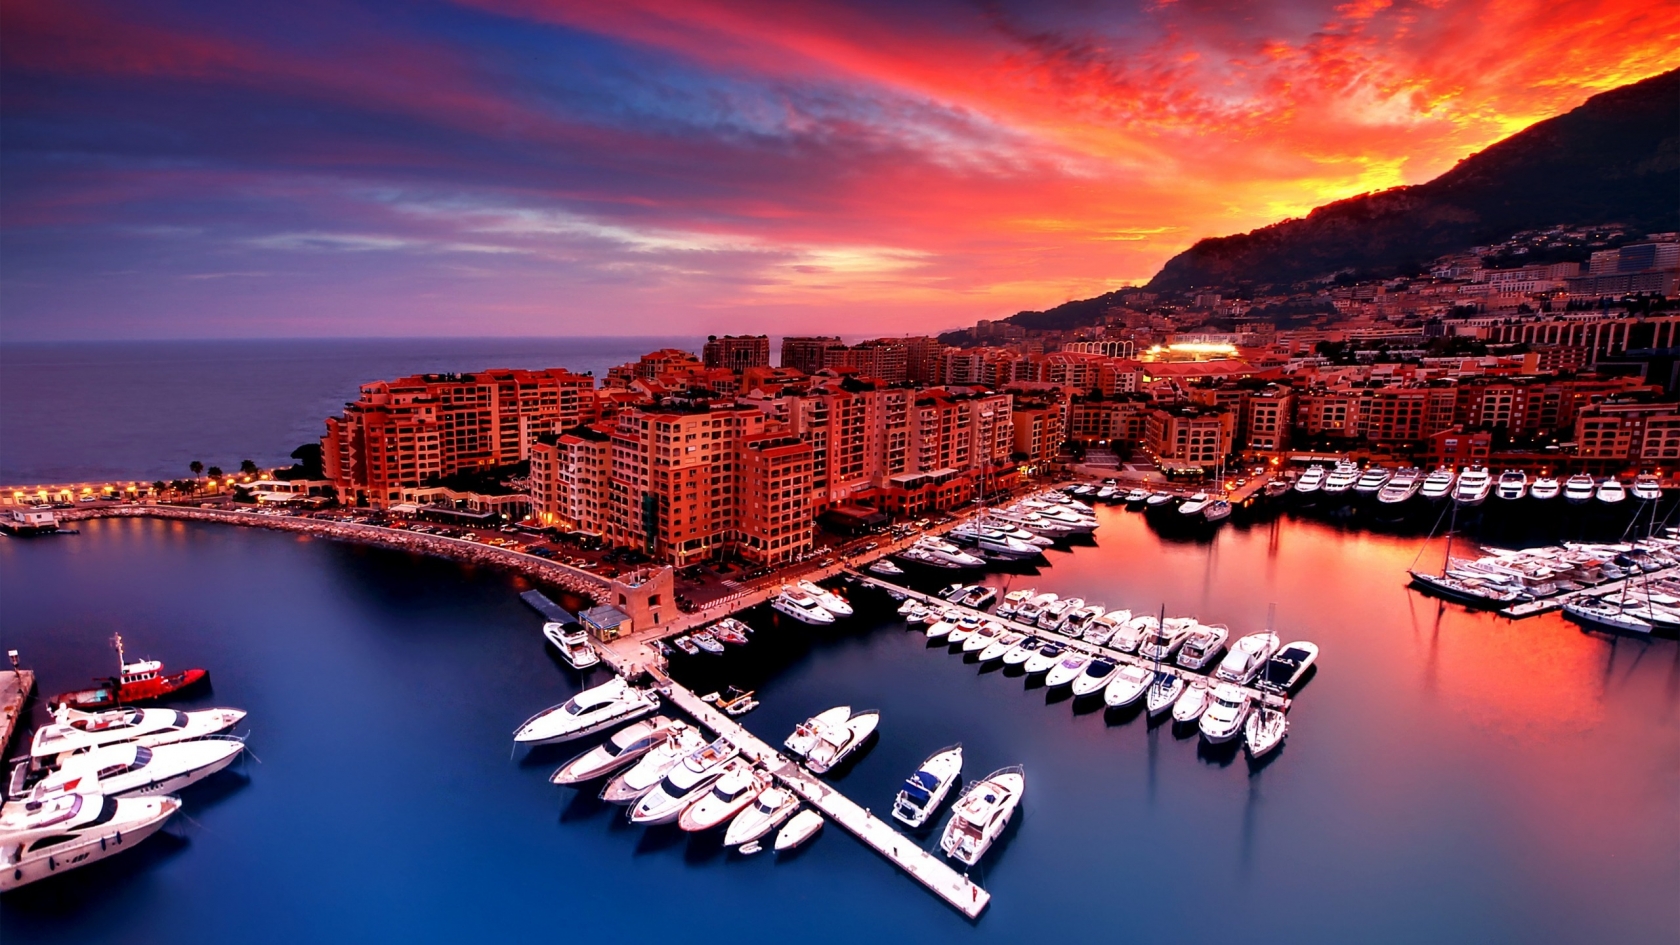 Sunrise in Monaco for 1680 x 945 HDTV resolution